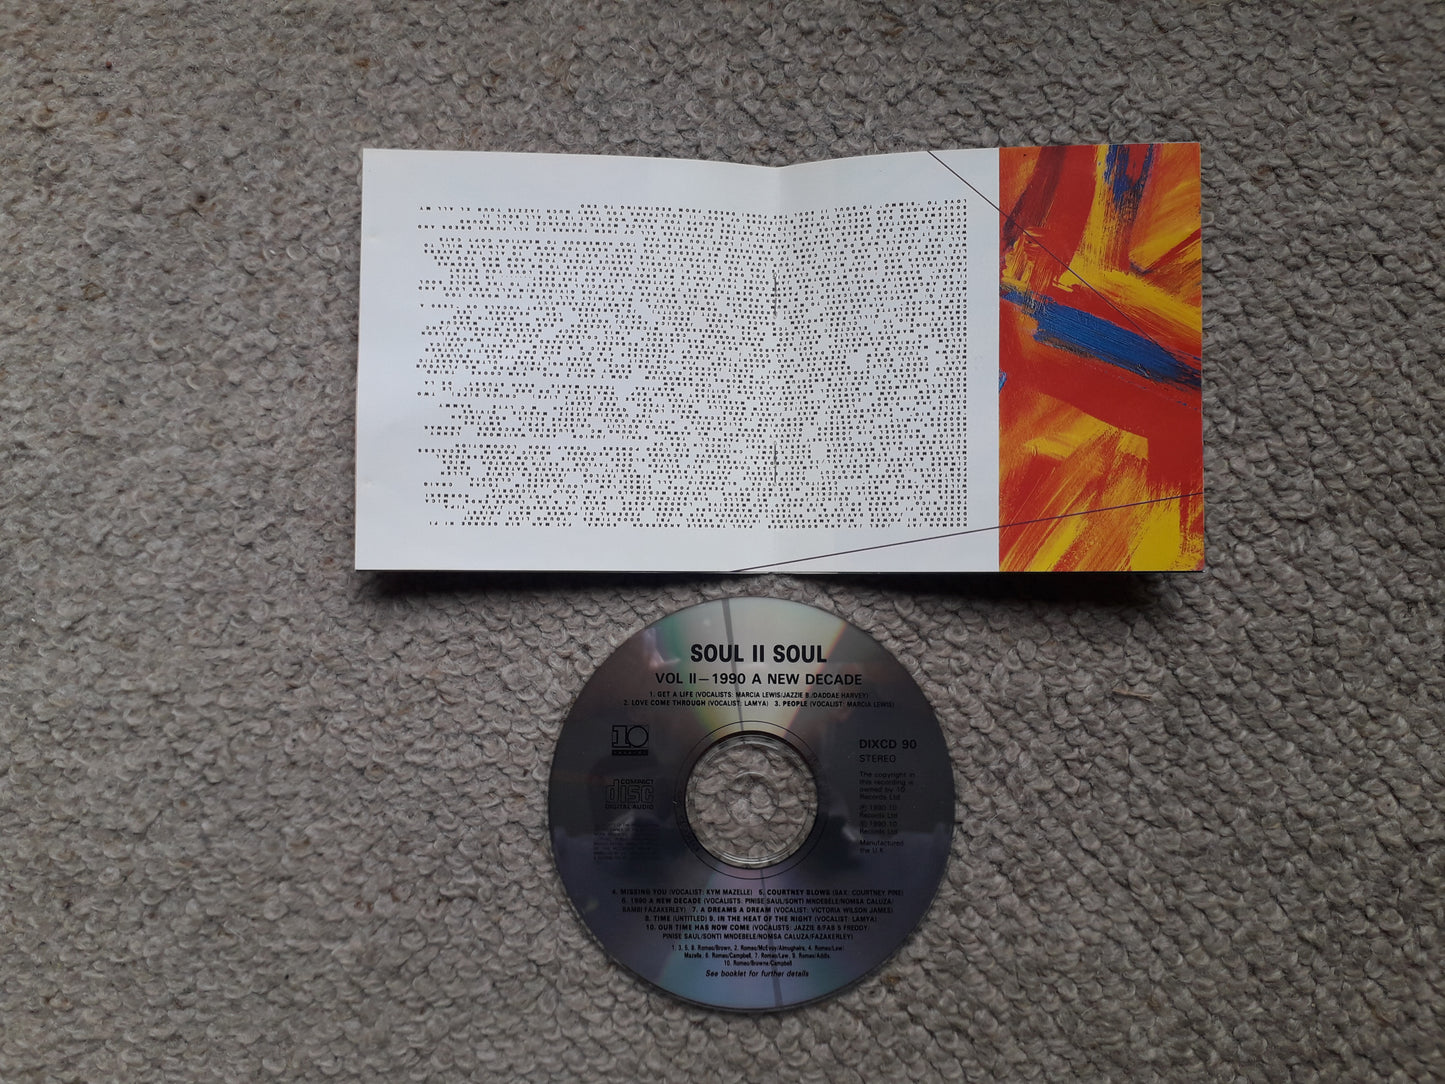 Soul II Soul-Vol II (A New Decade) CD (DIX CD 90)